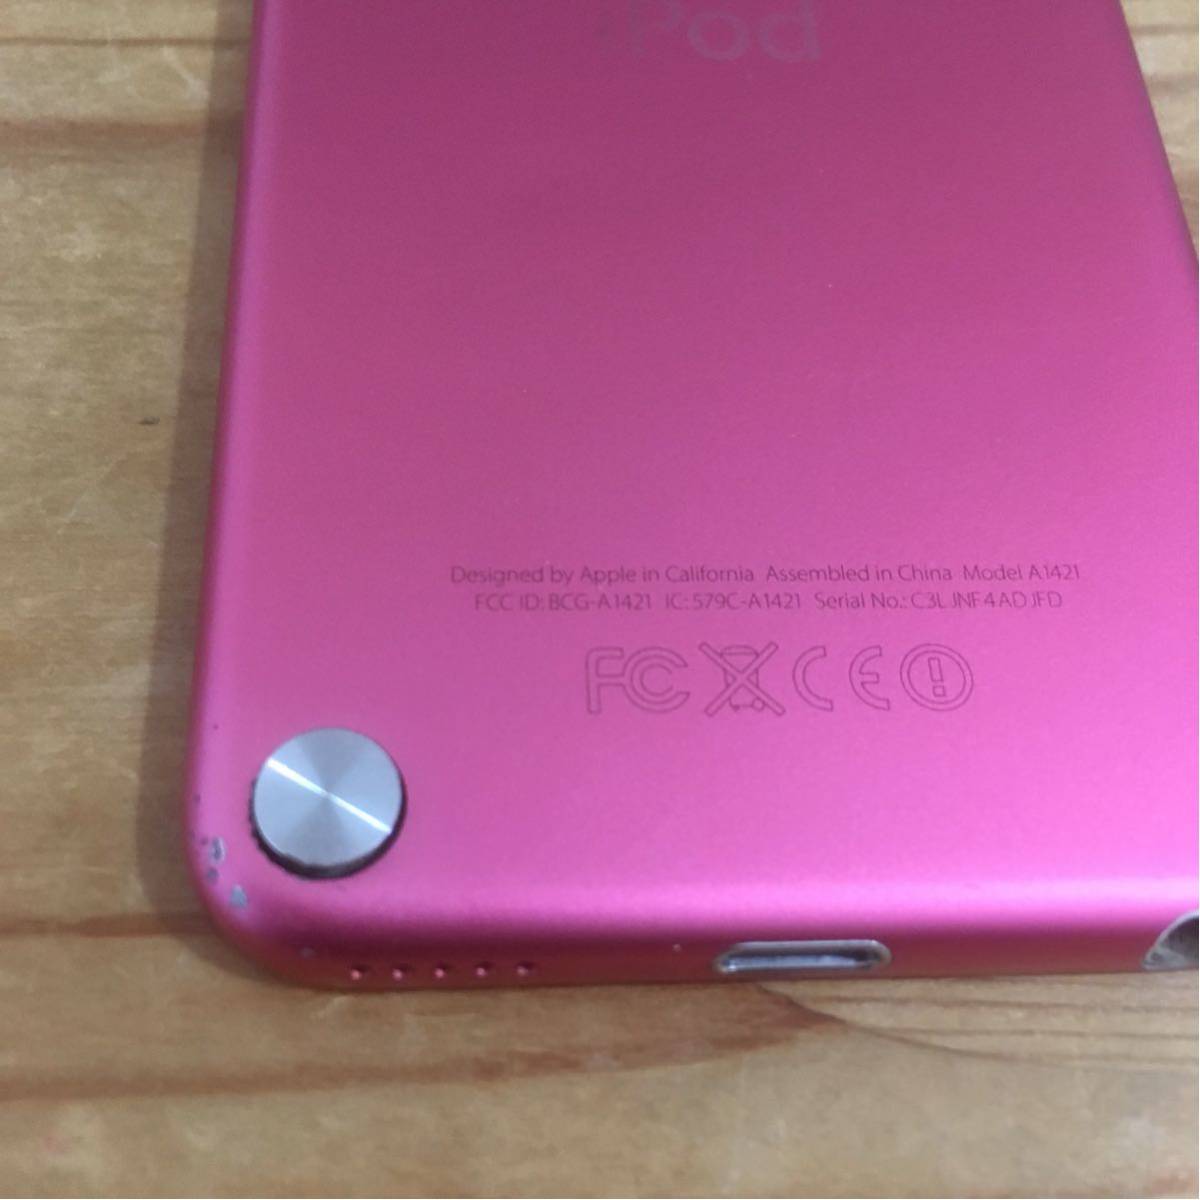 免費送貨Apple iPod touch第5代粉紅色16GB 原文:送料無料 Apple iPod touch 第5世代 ピンク 16GB